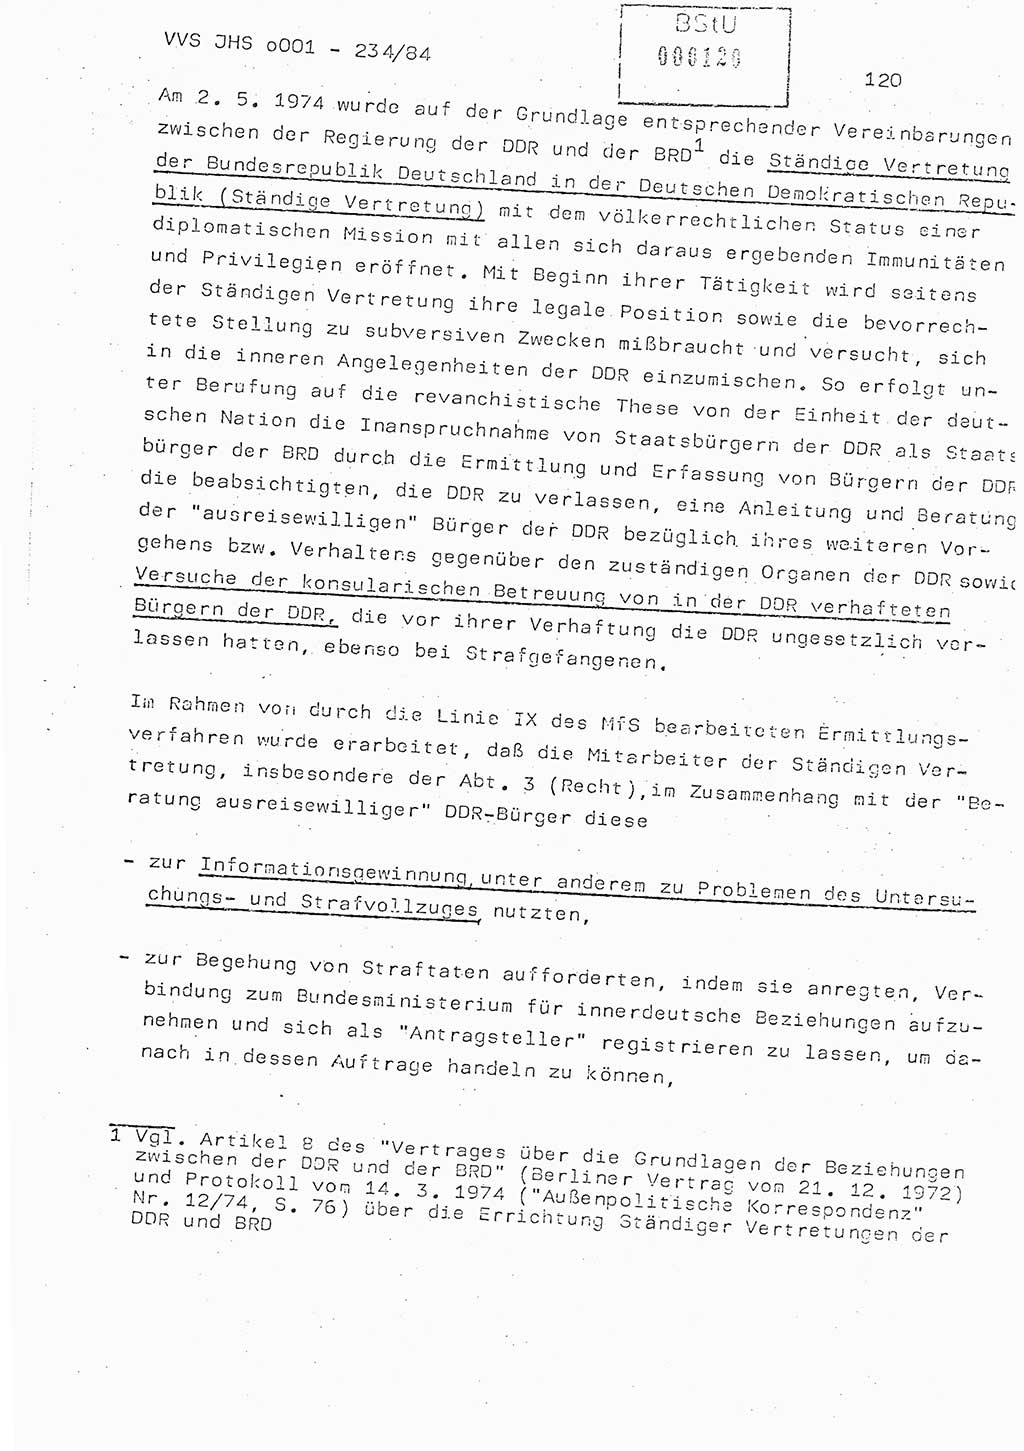 Dissertation Oberst Siegfried Rataizick (Abt. ⅩⅣ), Oberstleutnant Volkmar Heinz (Abt. ⅩⅣ), Oberstleutnant Werner Stein (HA Ⅸ), Hauptmann Heinz Conrad (JHS), Ministerium für Staatssicherheit (MfS) [Deutsche Demokratische Republik (DDR)], Juristische Hochschule (JHS), Vertrauliche Verschlußsache (VVS) o001-234/84, Potsdam 1984, Seite 120 (Diss. MfS DDR JHS VVS o001-234/84 1984, S. 120)